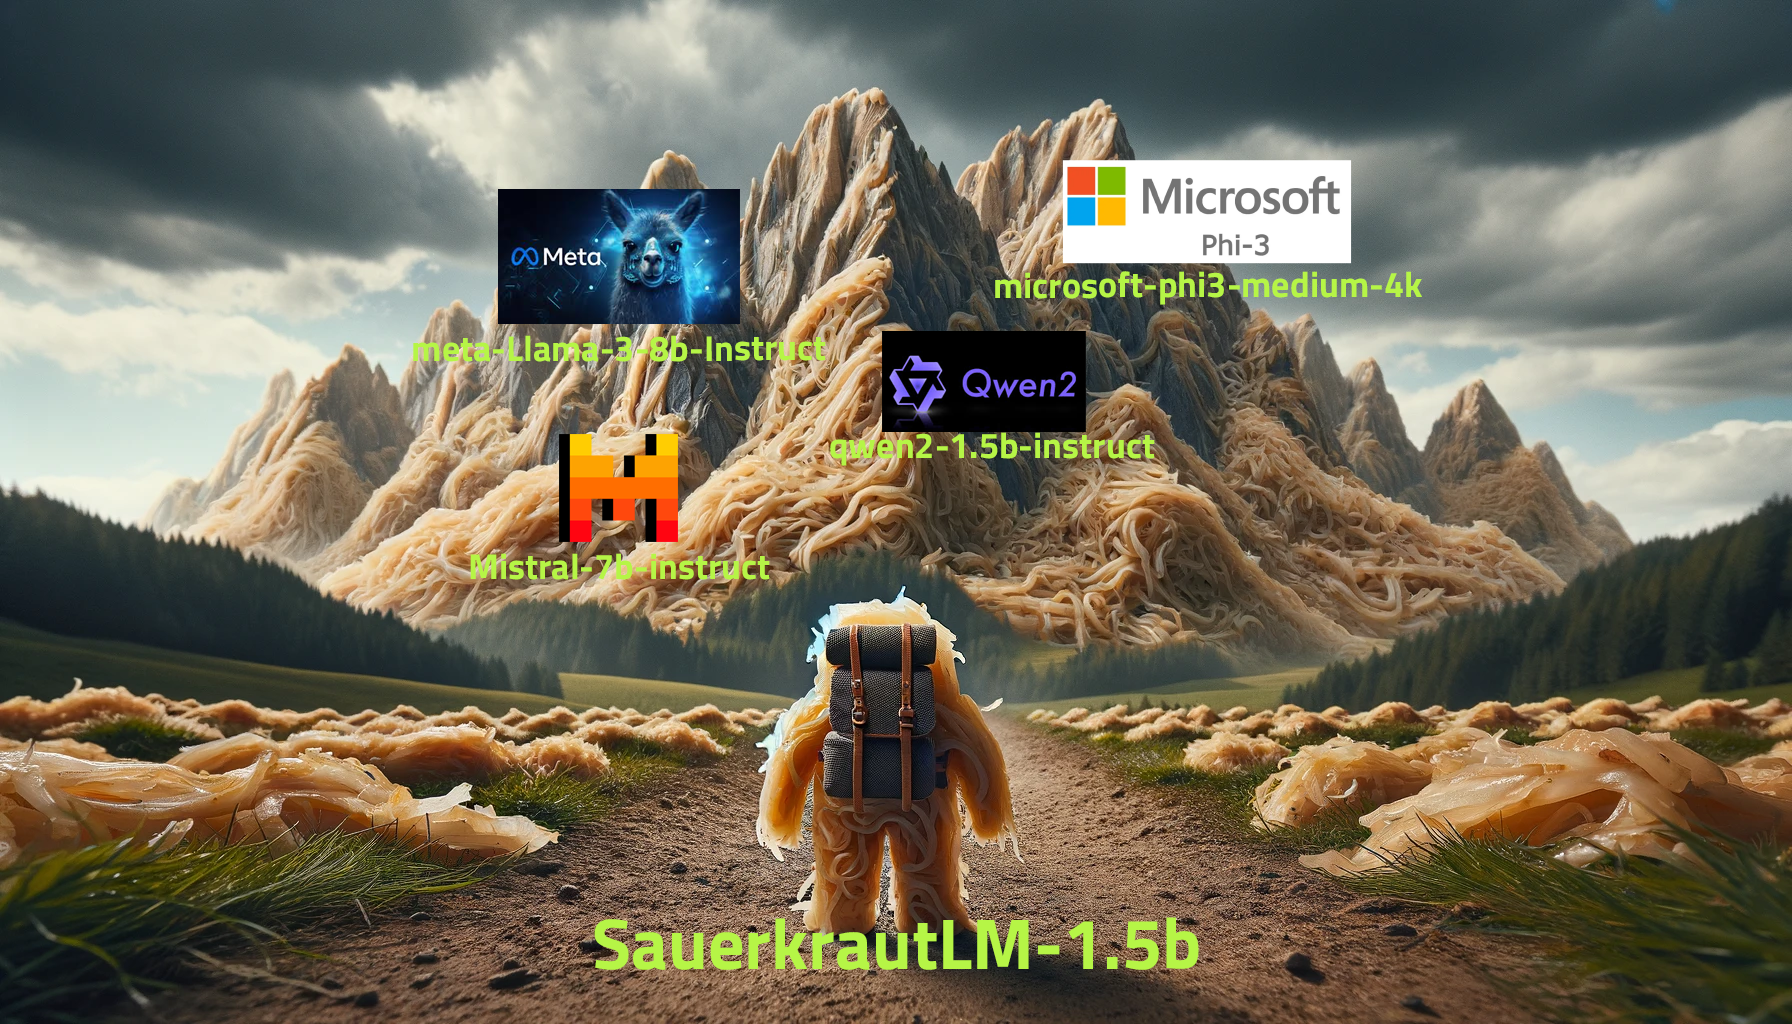 SauerkrautLM-1.5b